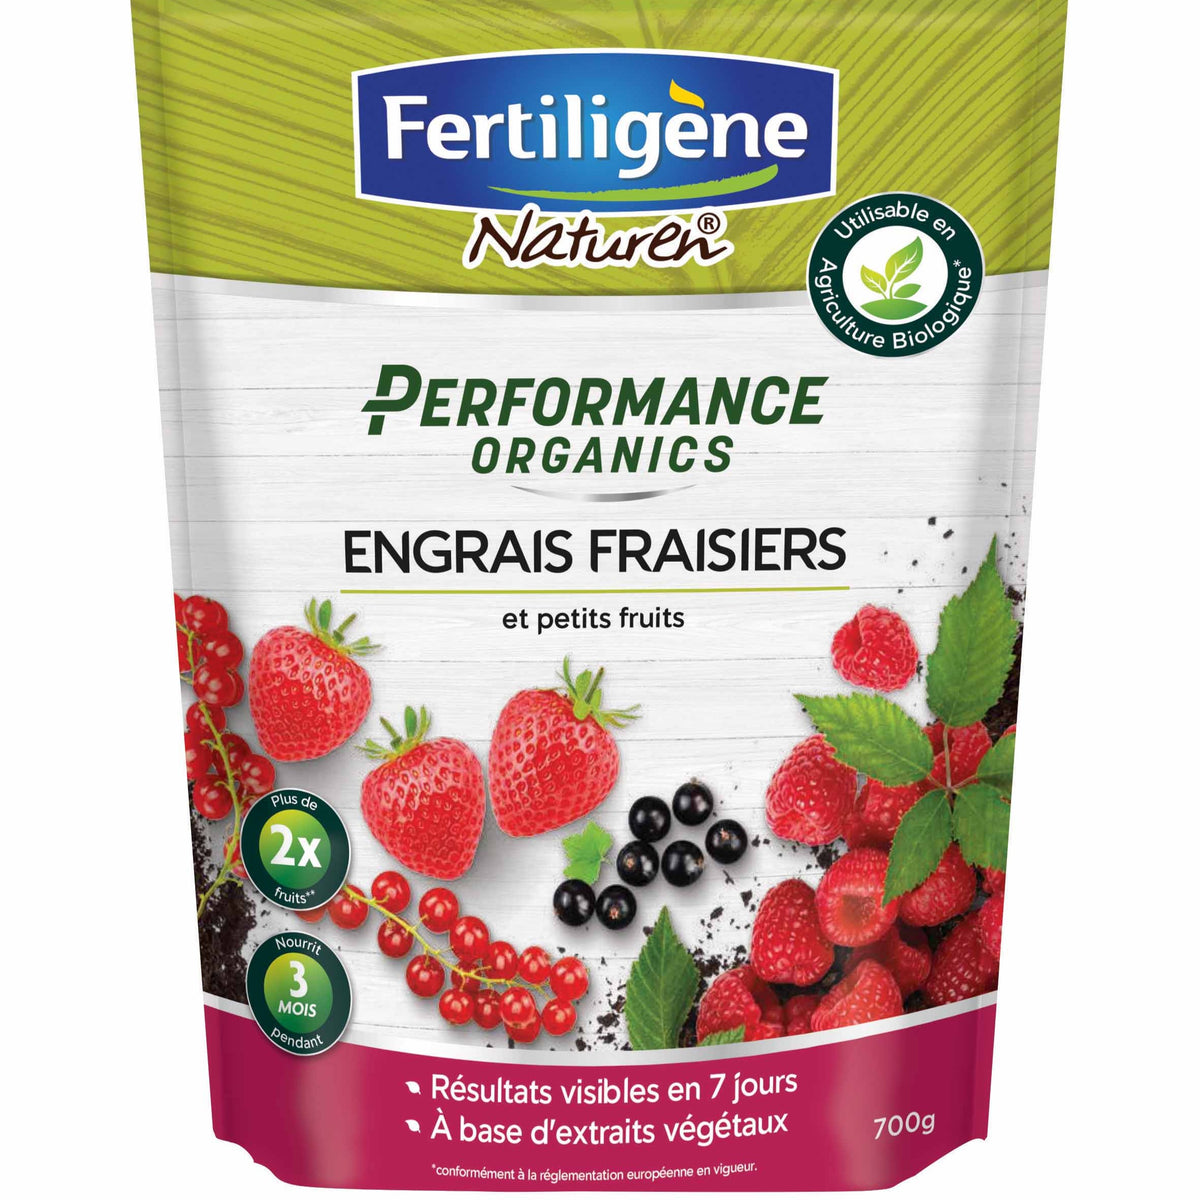 Engrais fraisiers et petits fruits FERTILIGENE - 1